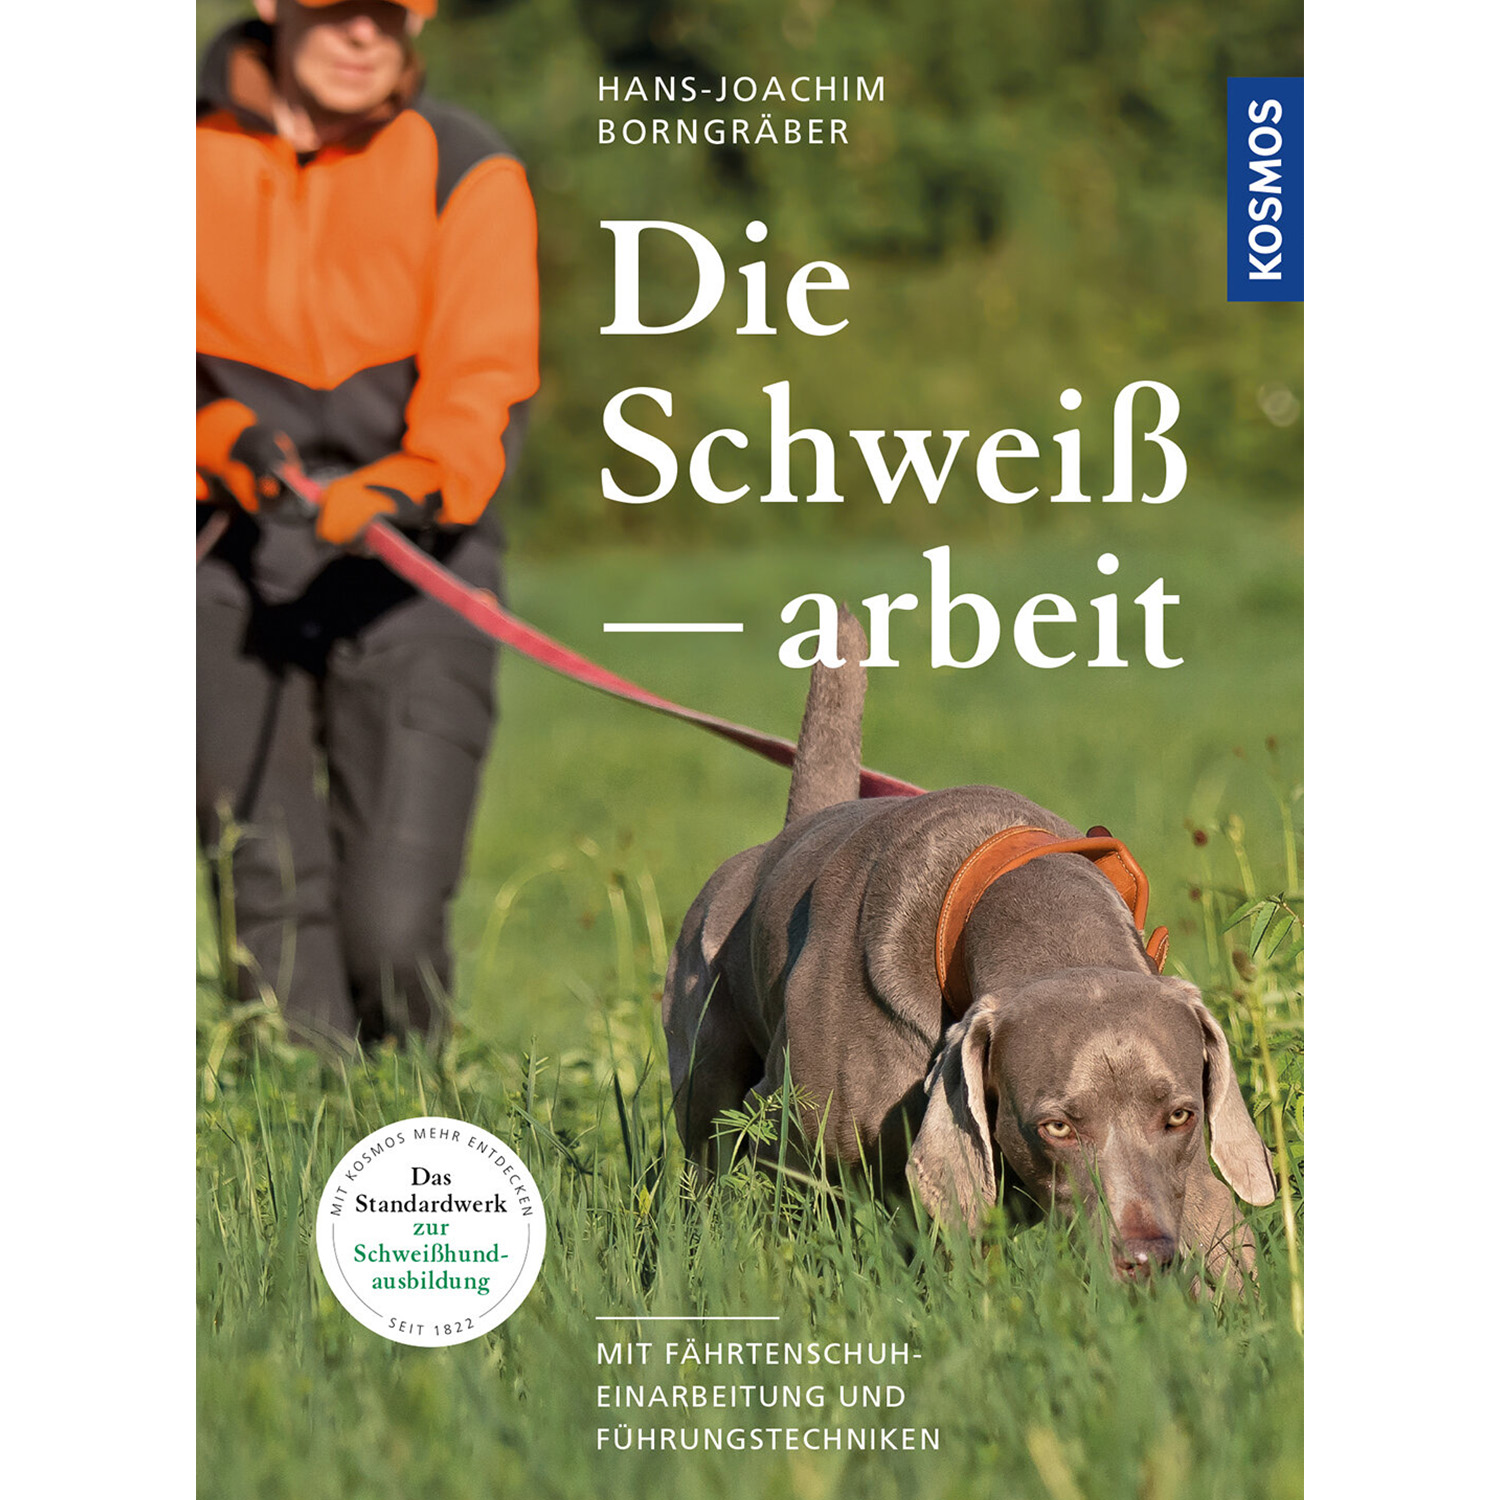 Die Schweißarbeit - Buch - Hans-Joachim Borngräber - Jagdanlass